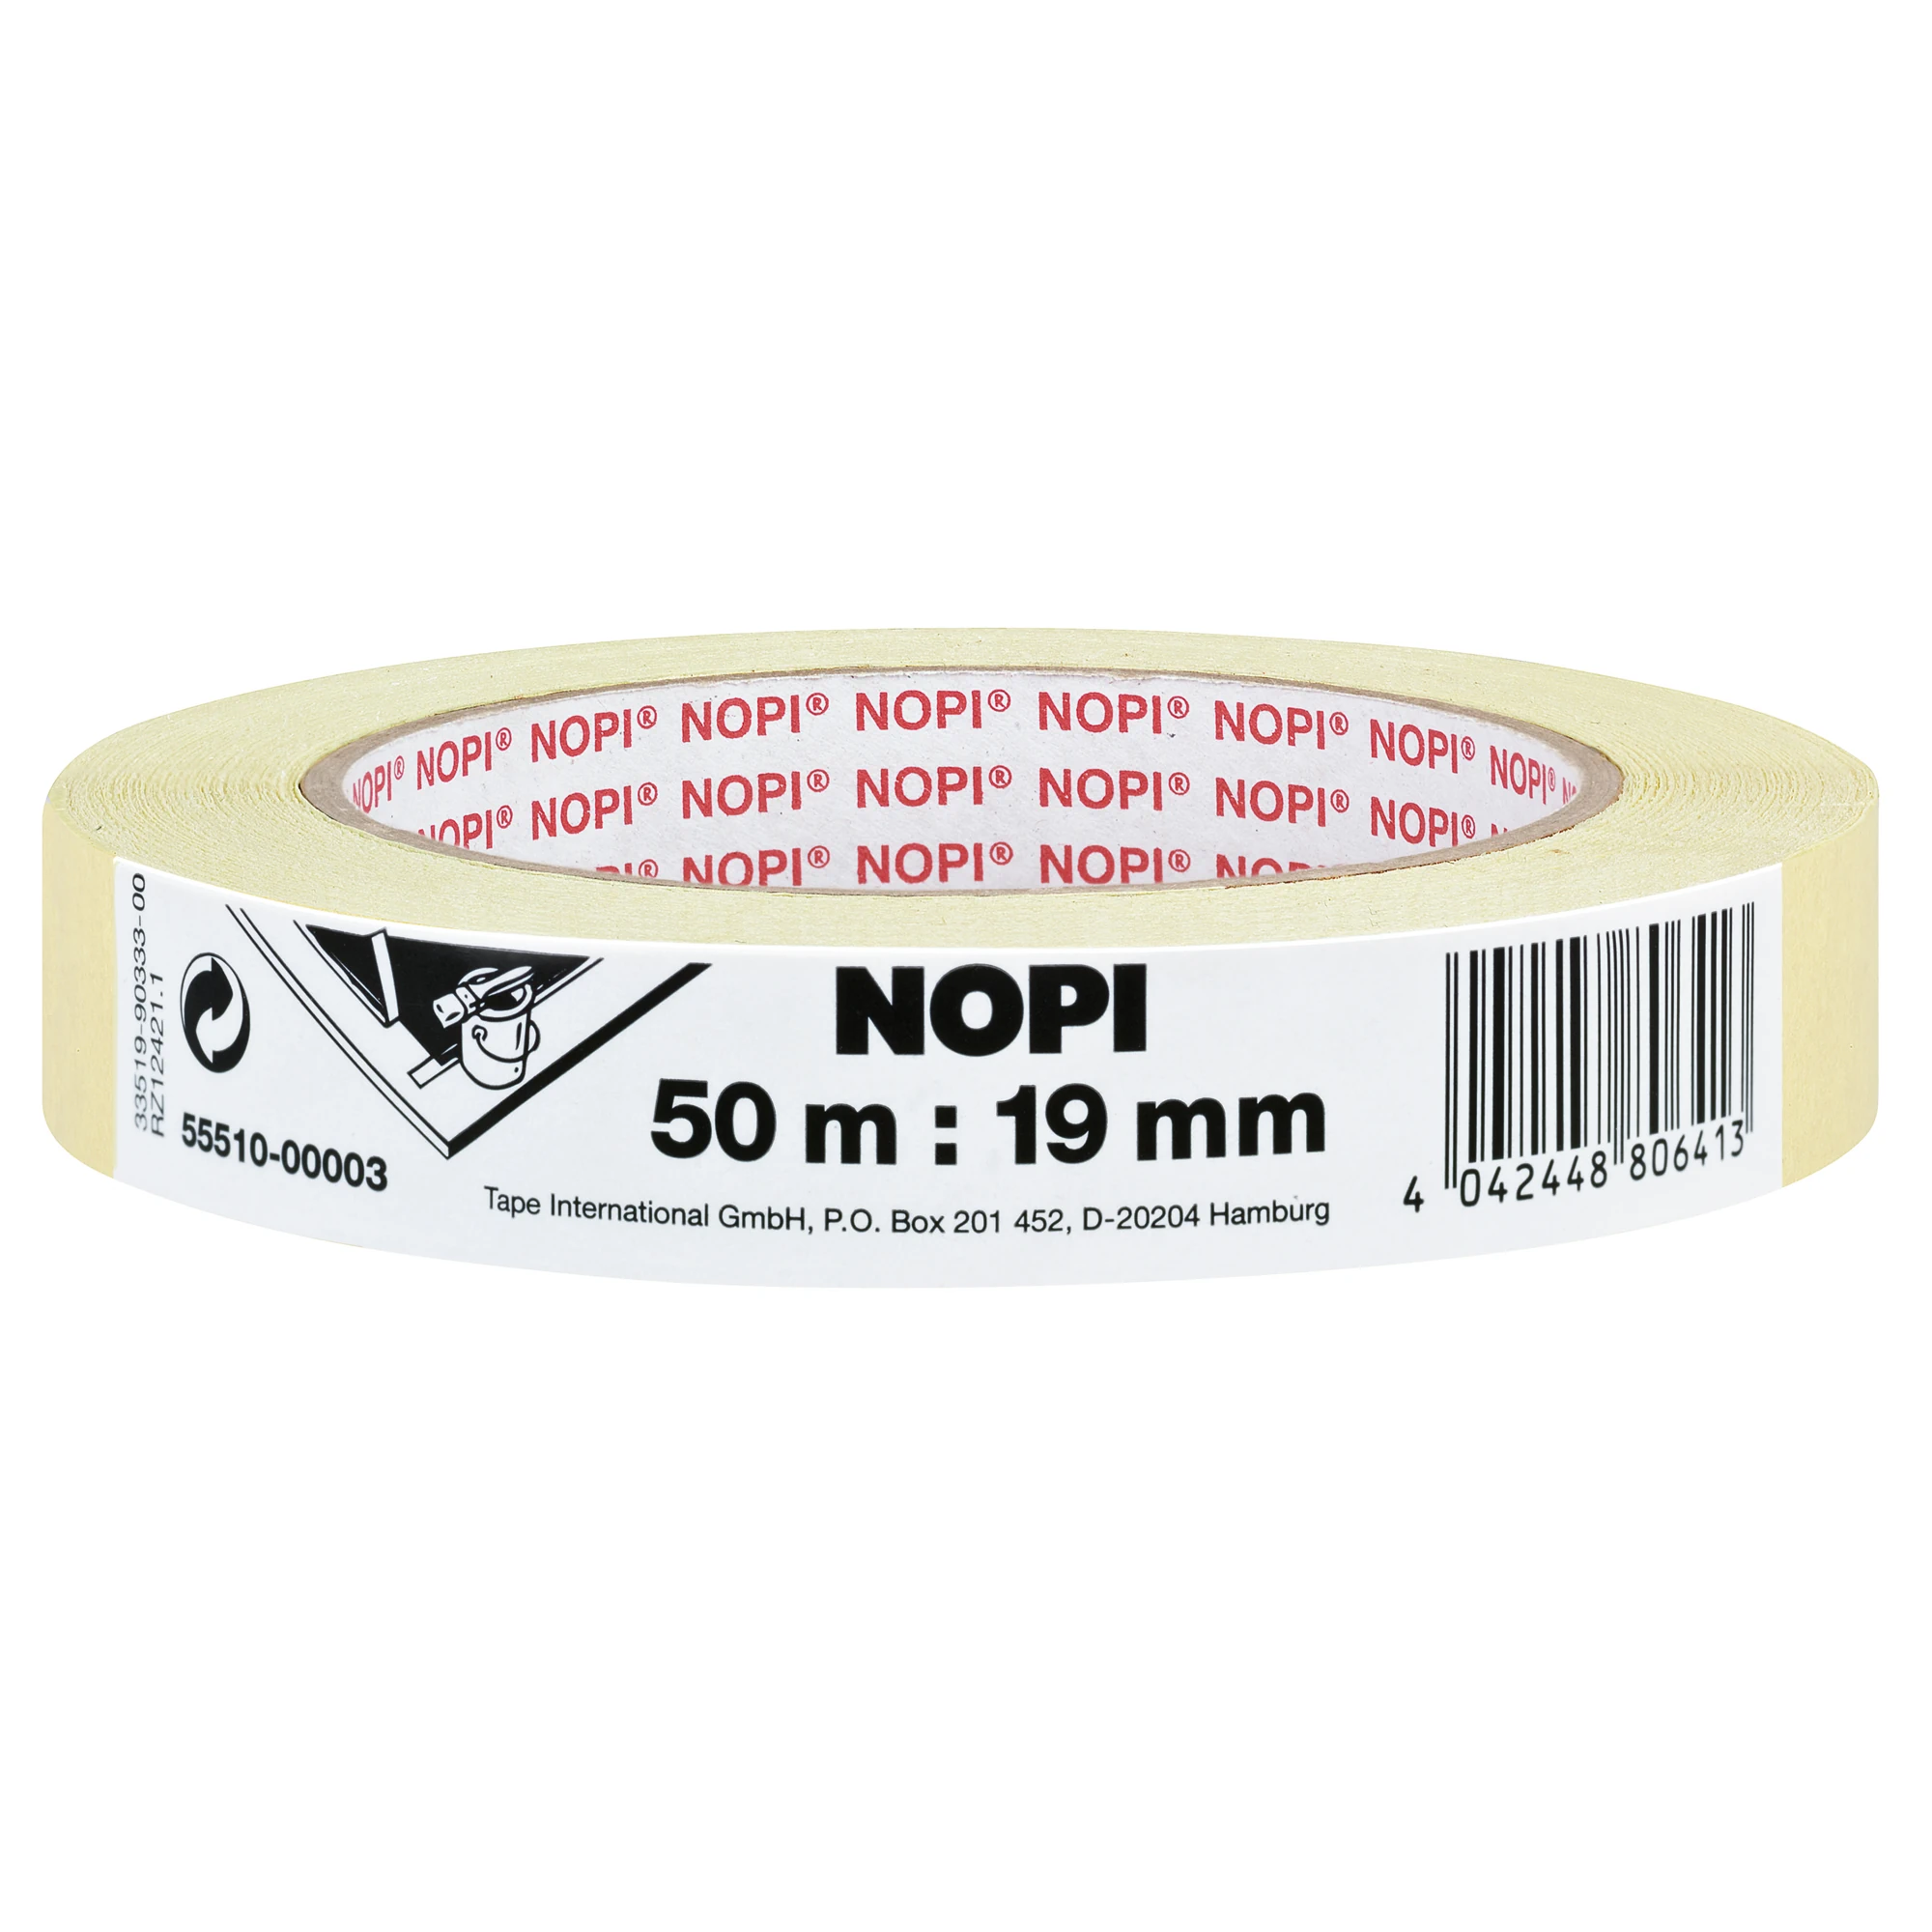 NOPI Kreppband 19 mm x 50 m beige